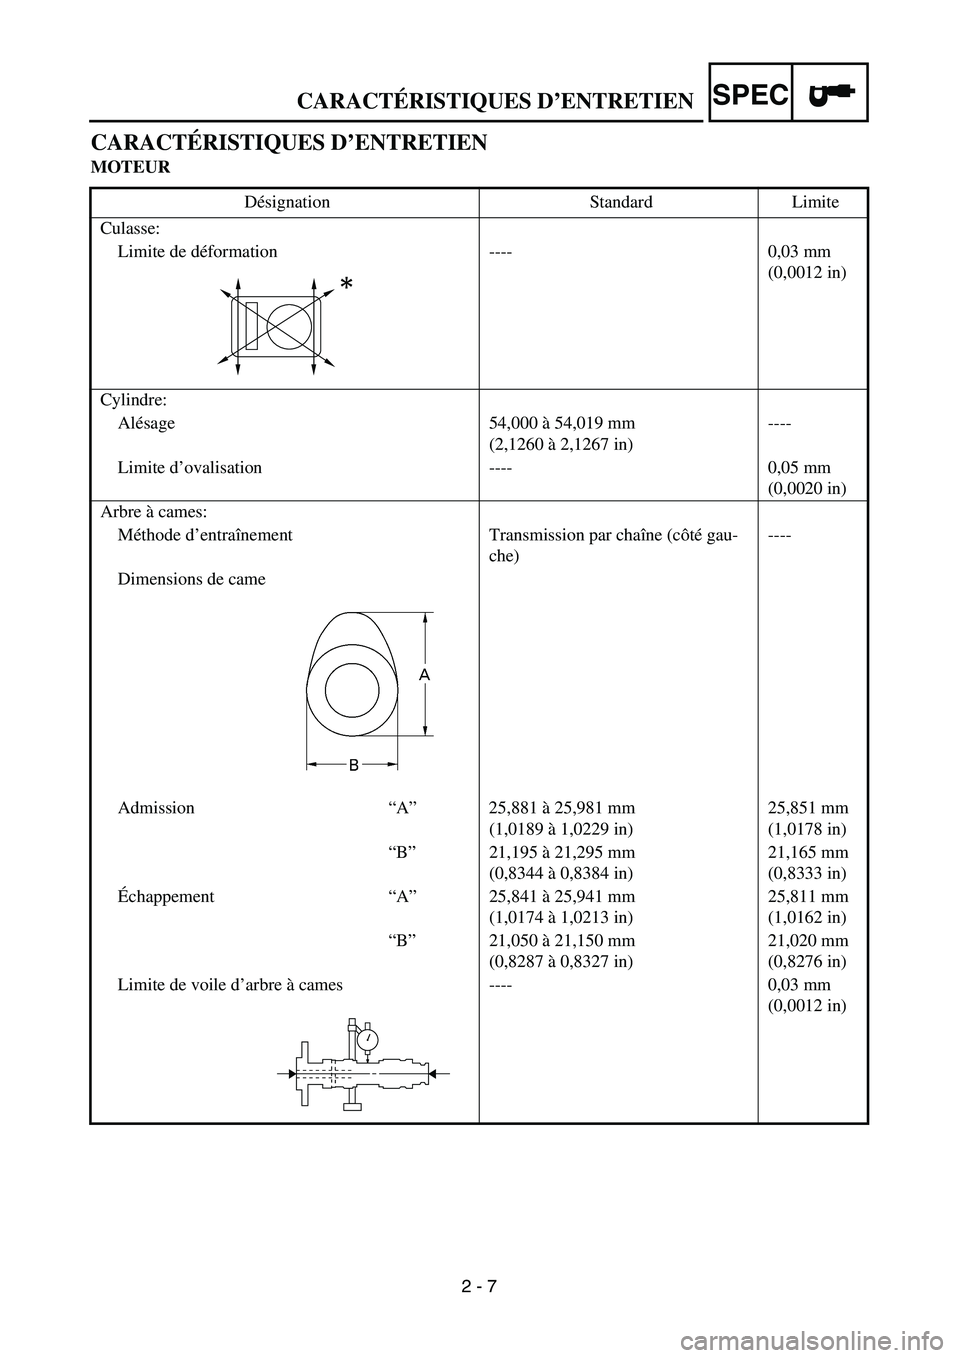 YAMAHA TTR125 2004  Owners Manual SPEC
2 - 7
CARACTÉRISTIQUES D’ENTRETIEN
MOTEUR
Désignation Standard Limite
Culasse:
Limite de déformation ---- 0,03 mm 
(0,0012 in)
Cylindre:
Alésage 54,000 à 54,019 mm
(2,1260 à 2,1267 in)---